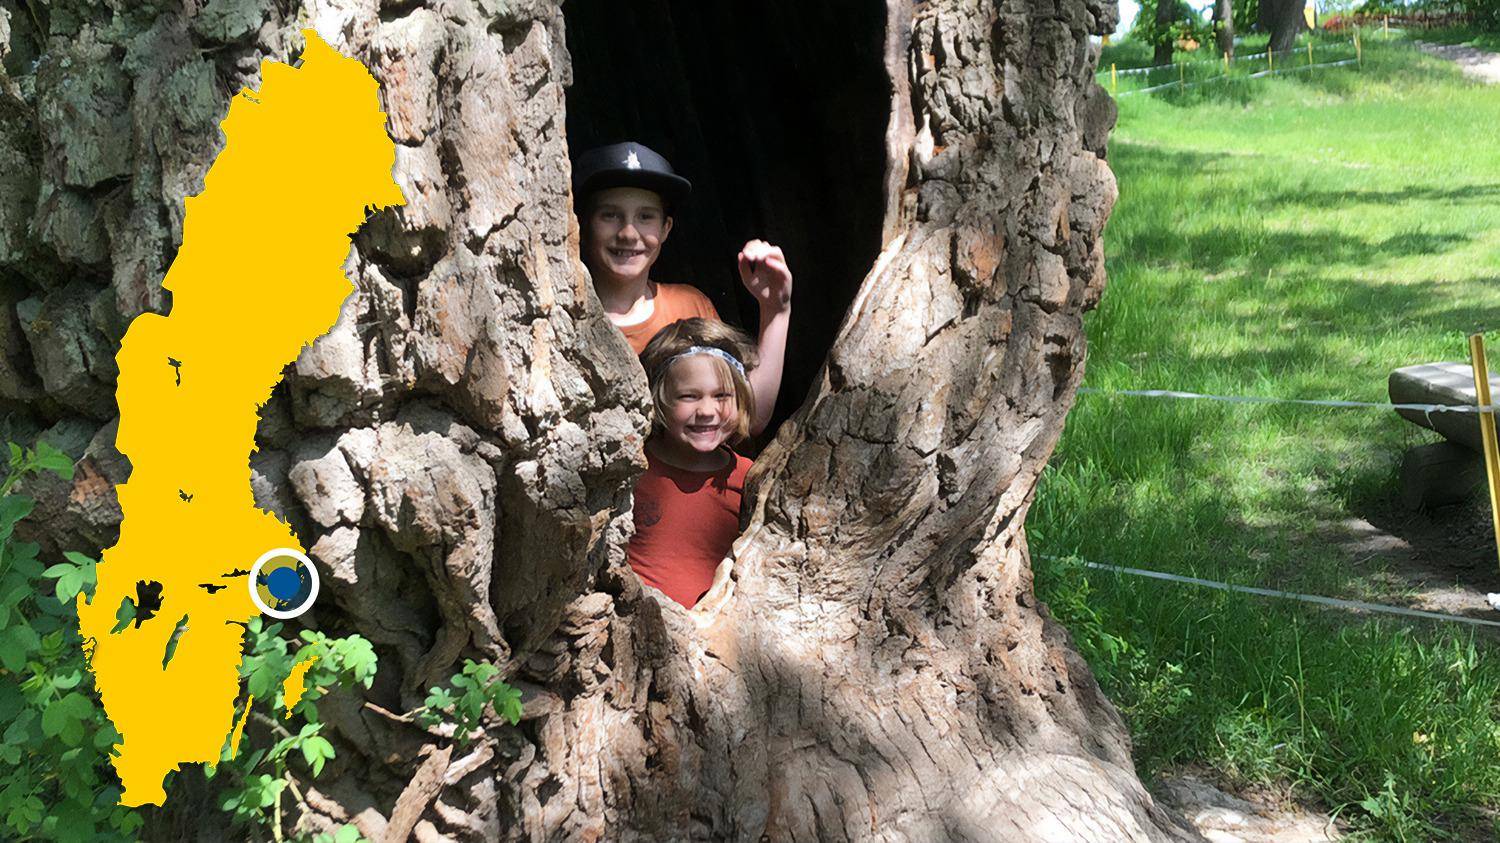 Zwei Kinder stehen in einer Höhle eines großen Baumes und lächeln in die Kamera. Es gibt eine gelbe Karte von Schweden mit einem blauen Punkt, der Ektorp markiert.